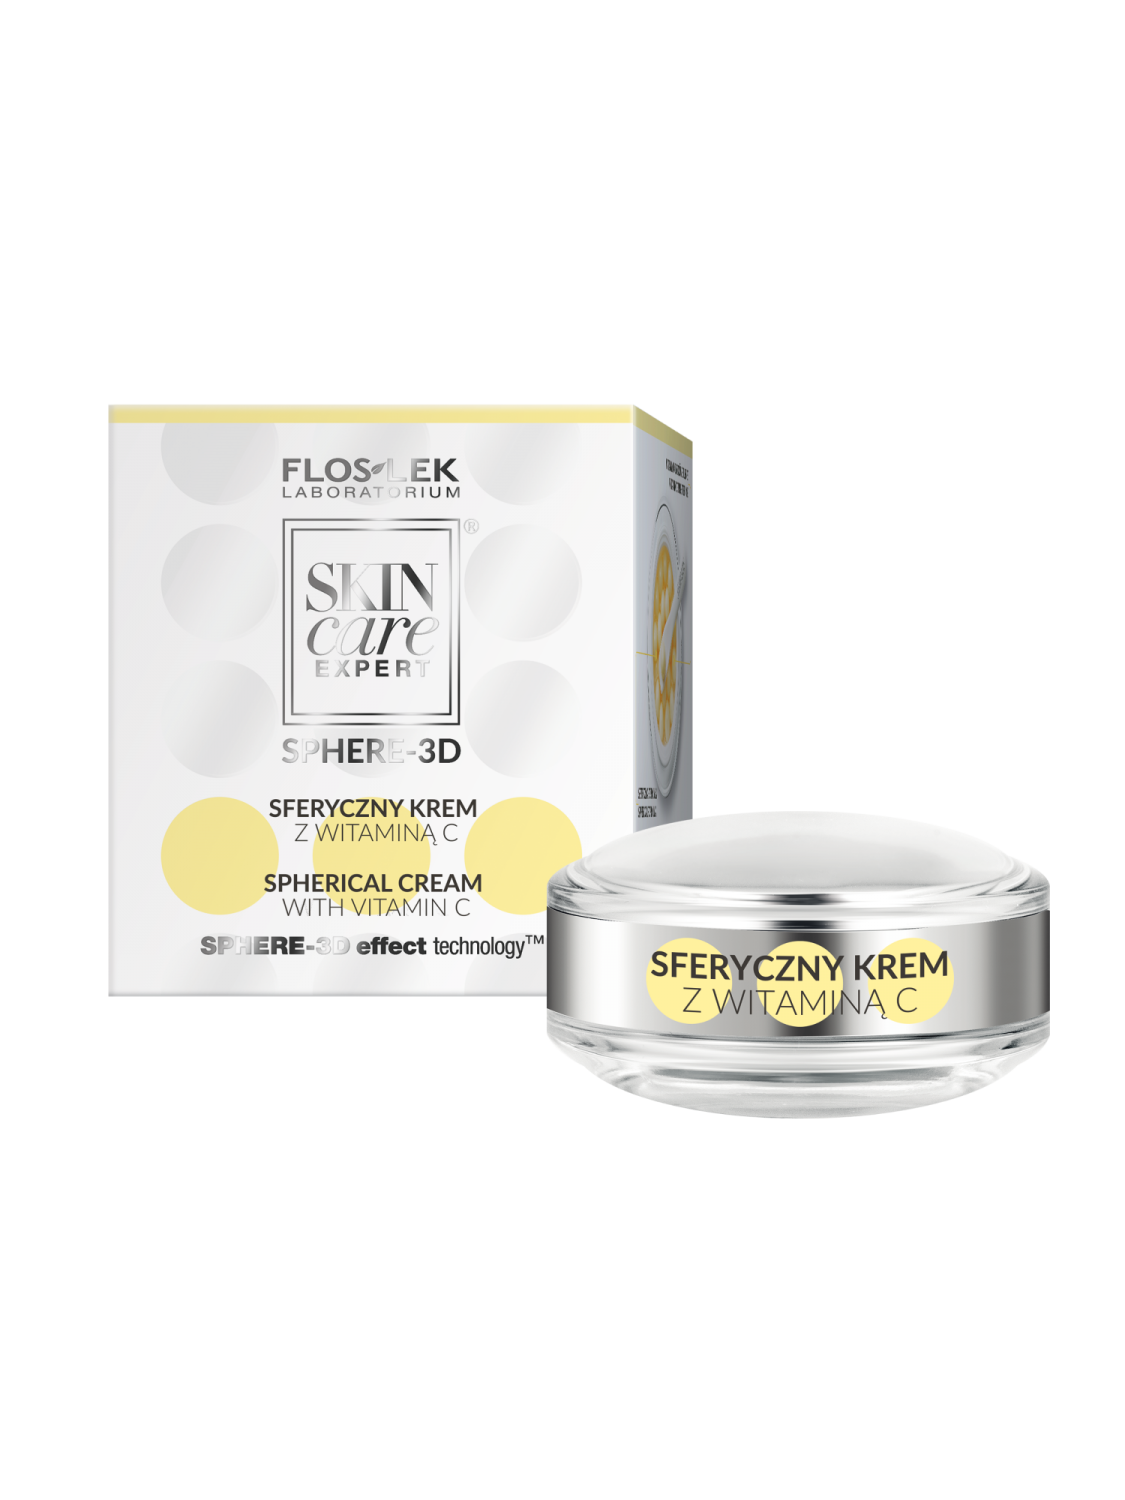 SKIN CARE EXPERT® SPHERE-3D Spherical cream with vitamin C - 11,5g - Floslek